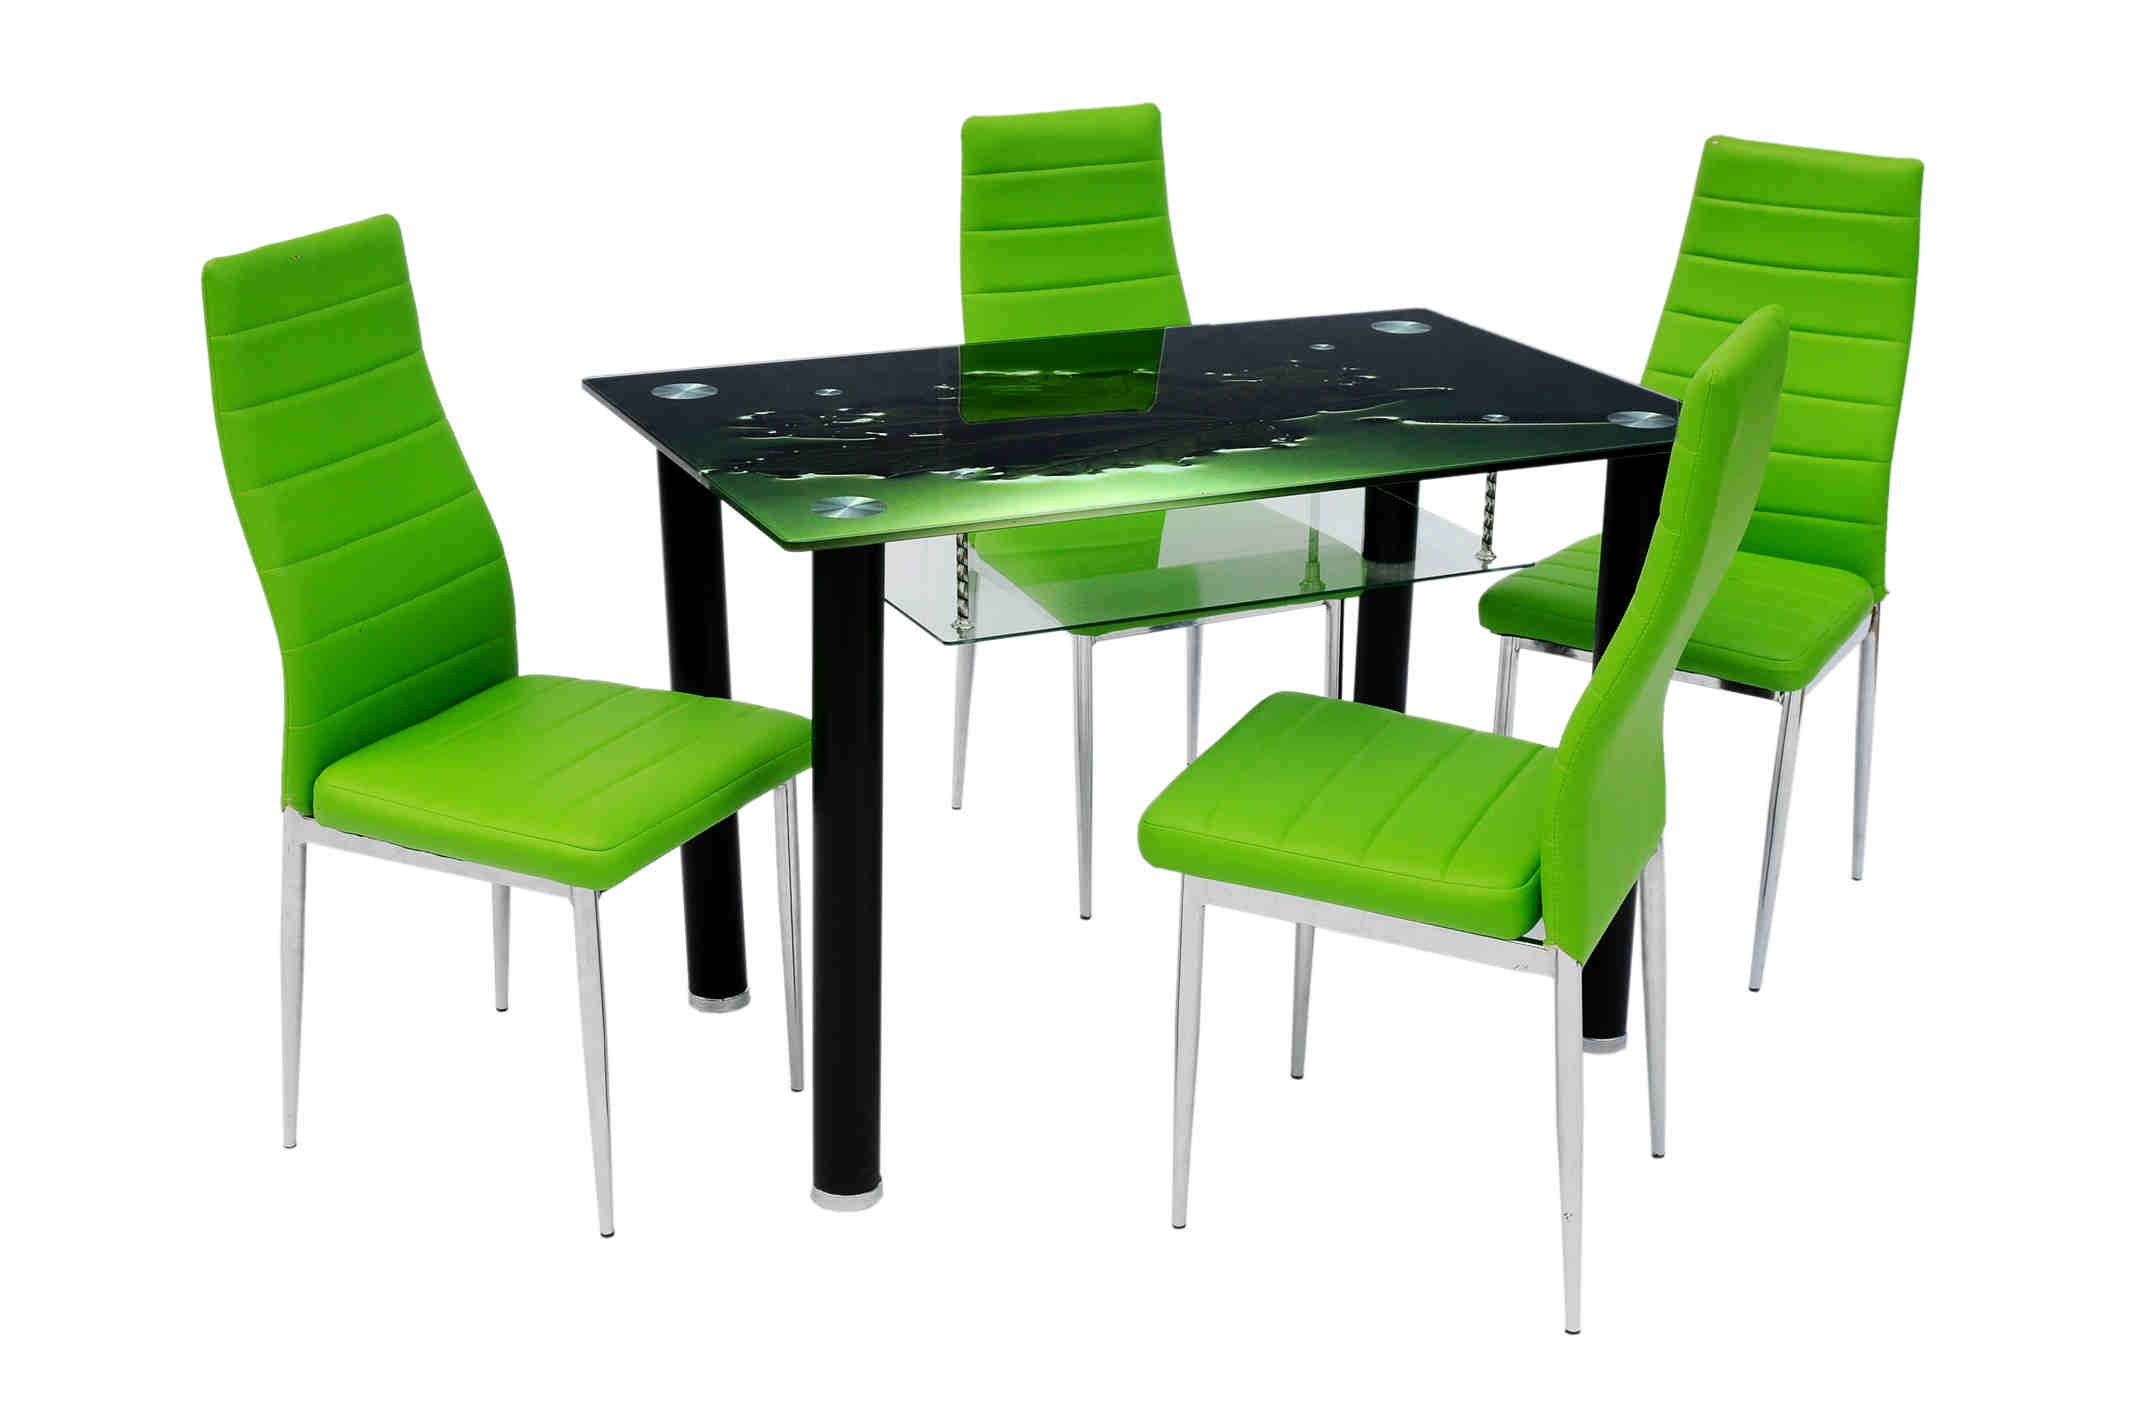 Купить кухонные стулья в минске. Стол кухонный. Кухонный стол и стулья. Кухня с зелеными стульями. Кухонные столы и стулья для кухни.